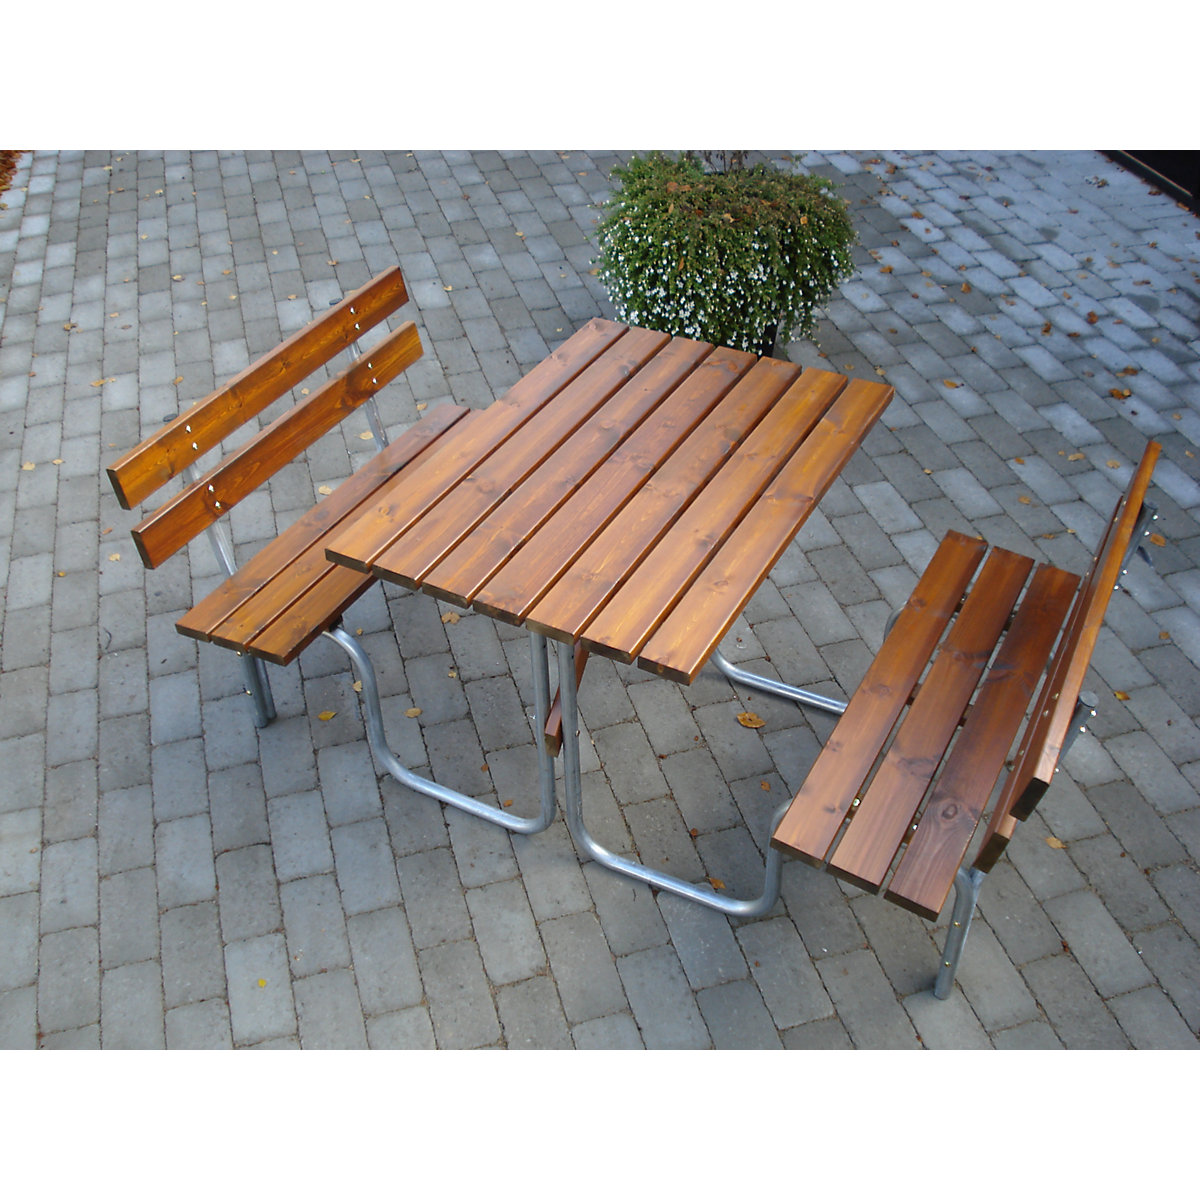 Zestaw do siedzenia, stół i 2 ławki, brązowy, dł. x szer. całk 1480 x 1700 mm-4